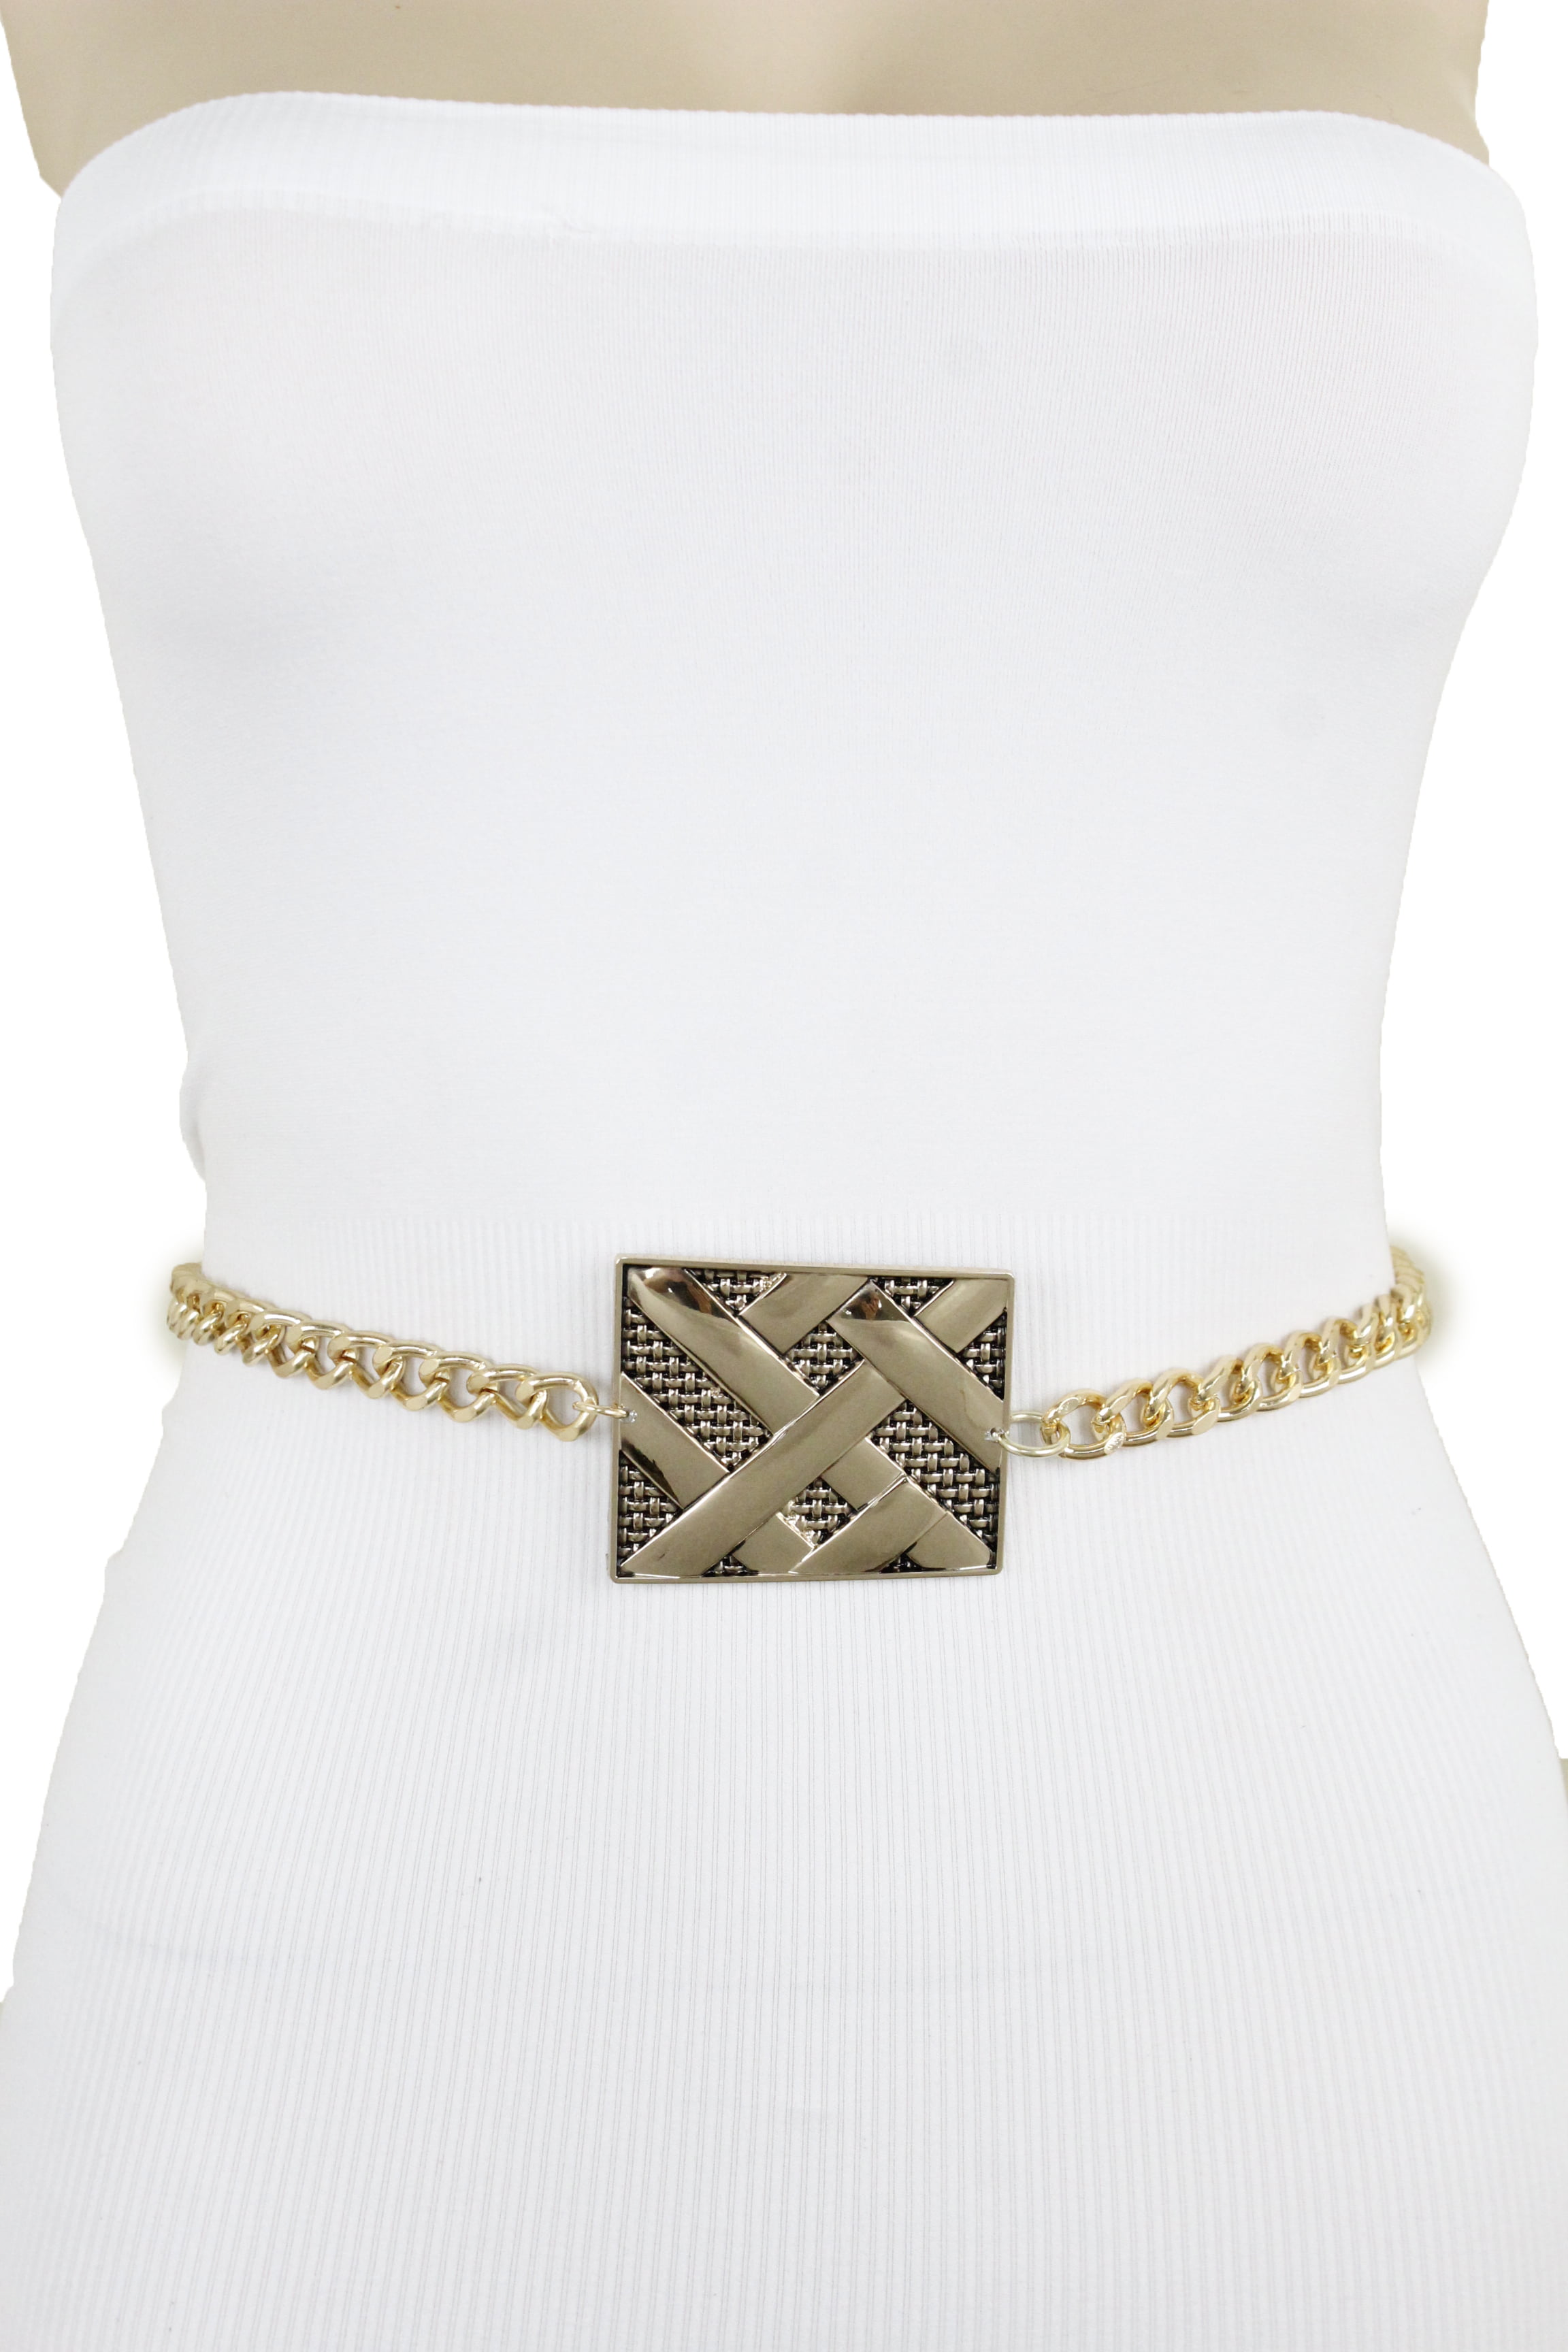 Fancy Women Gold Metal Chain Skinny Belt Bling Western Charm Buckle Plus XL XXL 